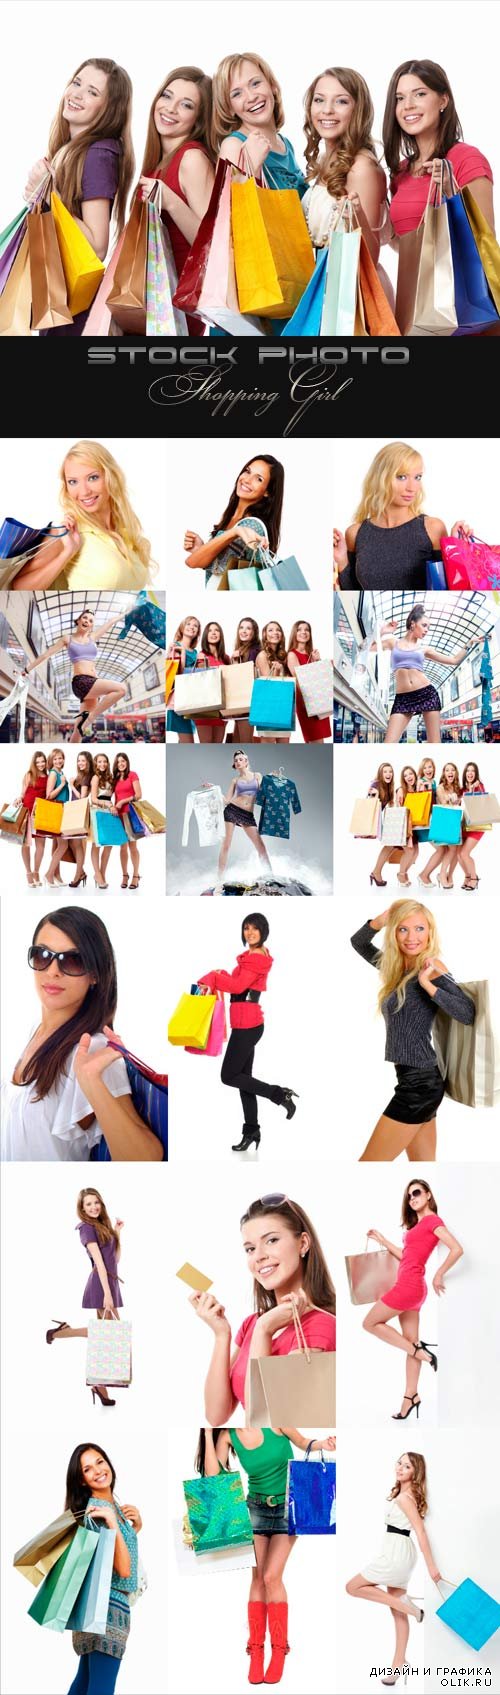 Shopping Girl raster graphics